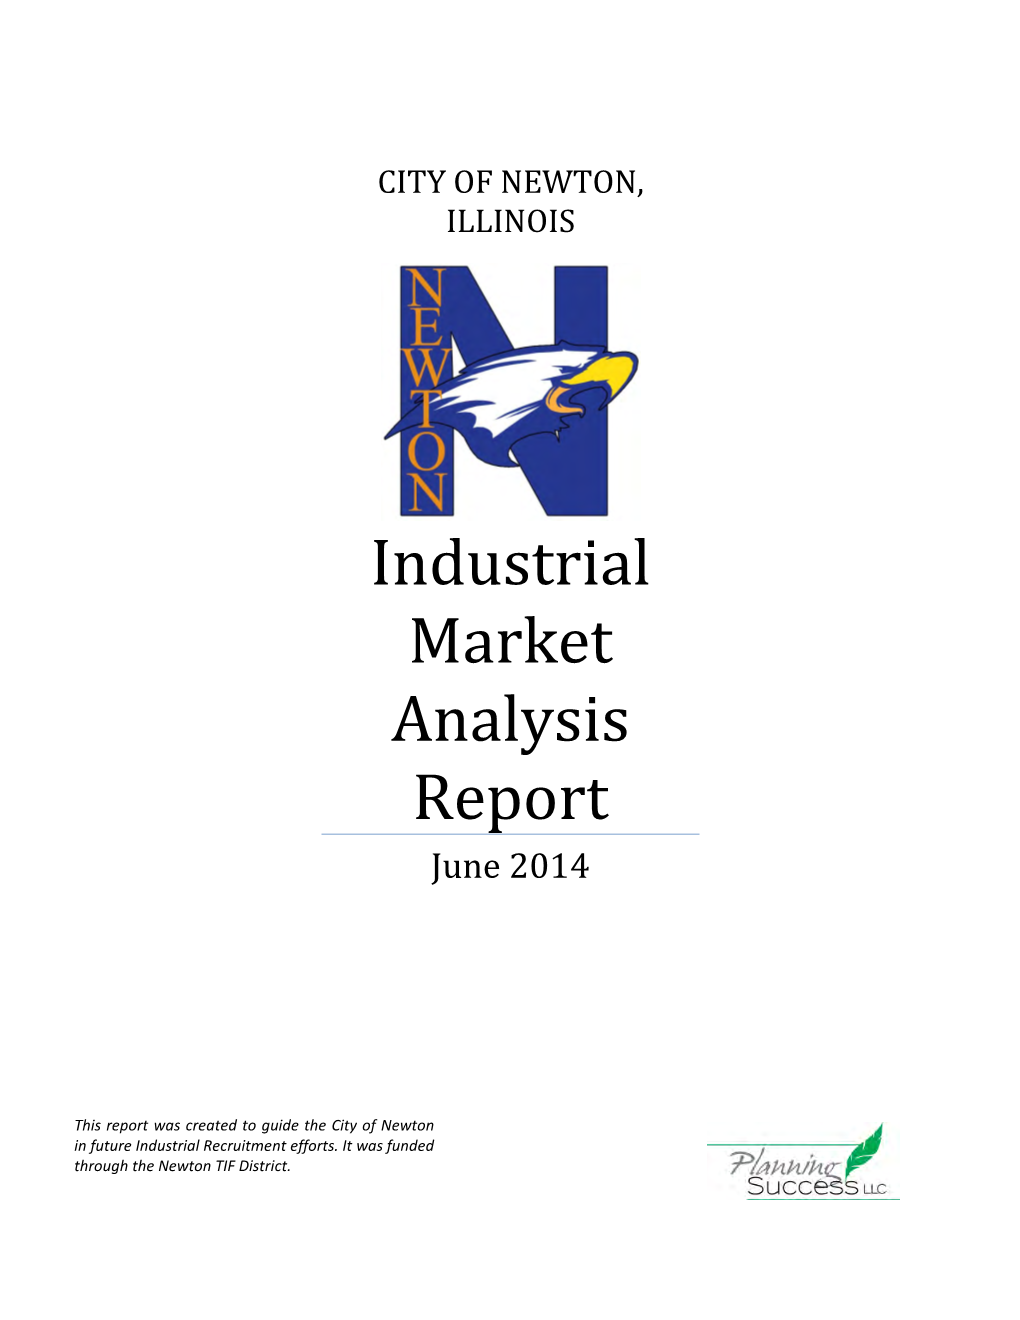 Industrial Market Analysis Report June 2014